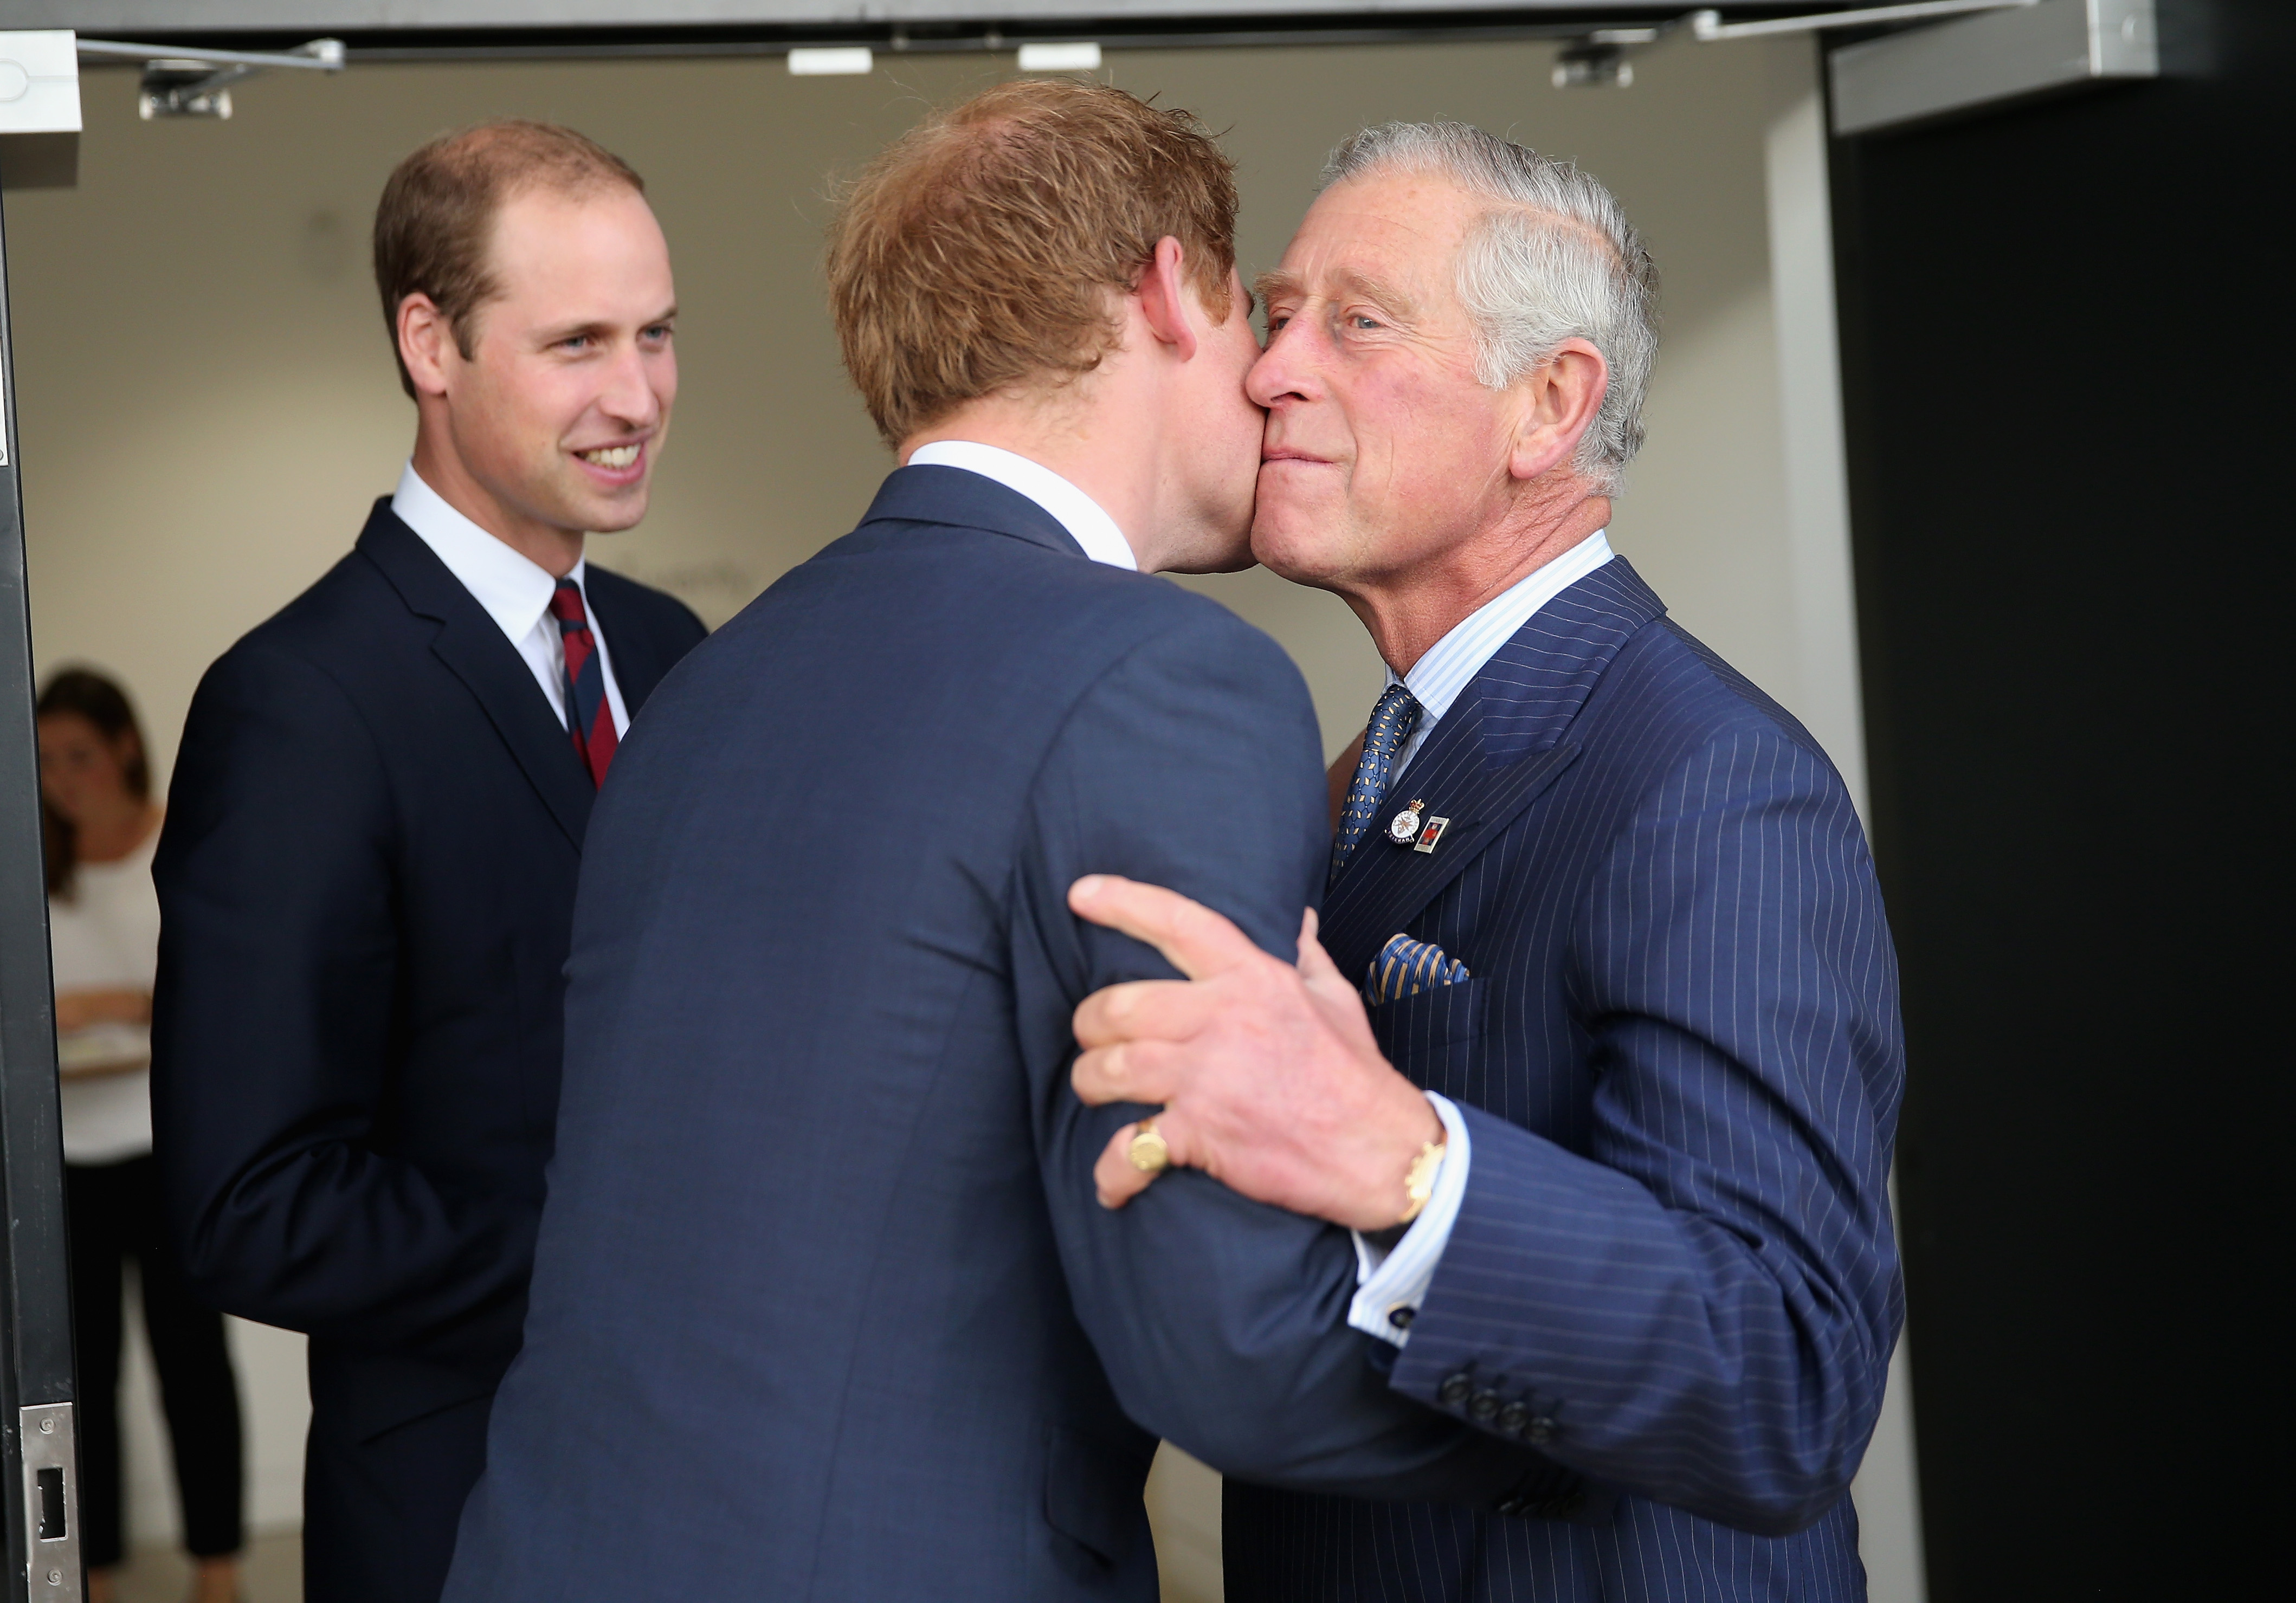 El príncipe Harry, el príncipe William y el rey Charles III en la Ceremonia de Inauguración de los Juegos Invictus en 2014 | Foto: Getty Images